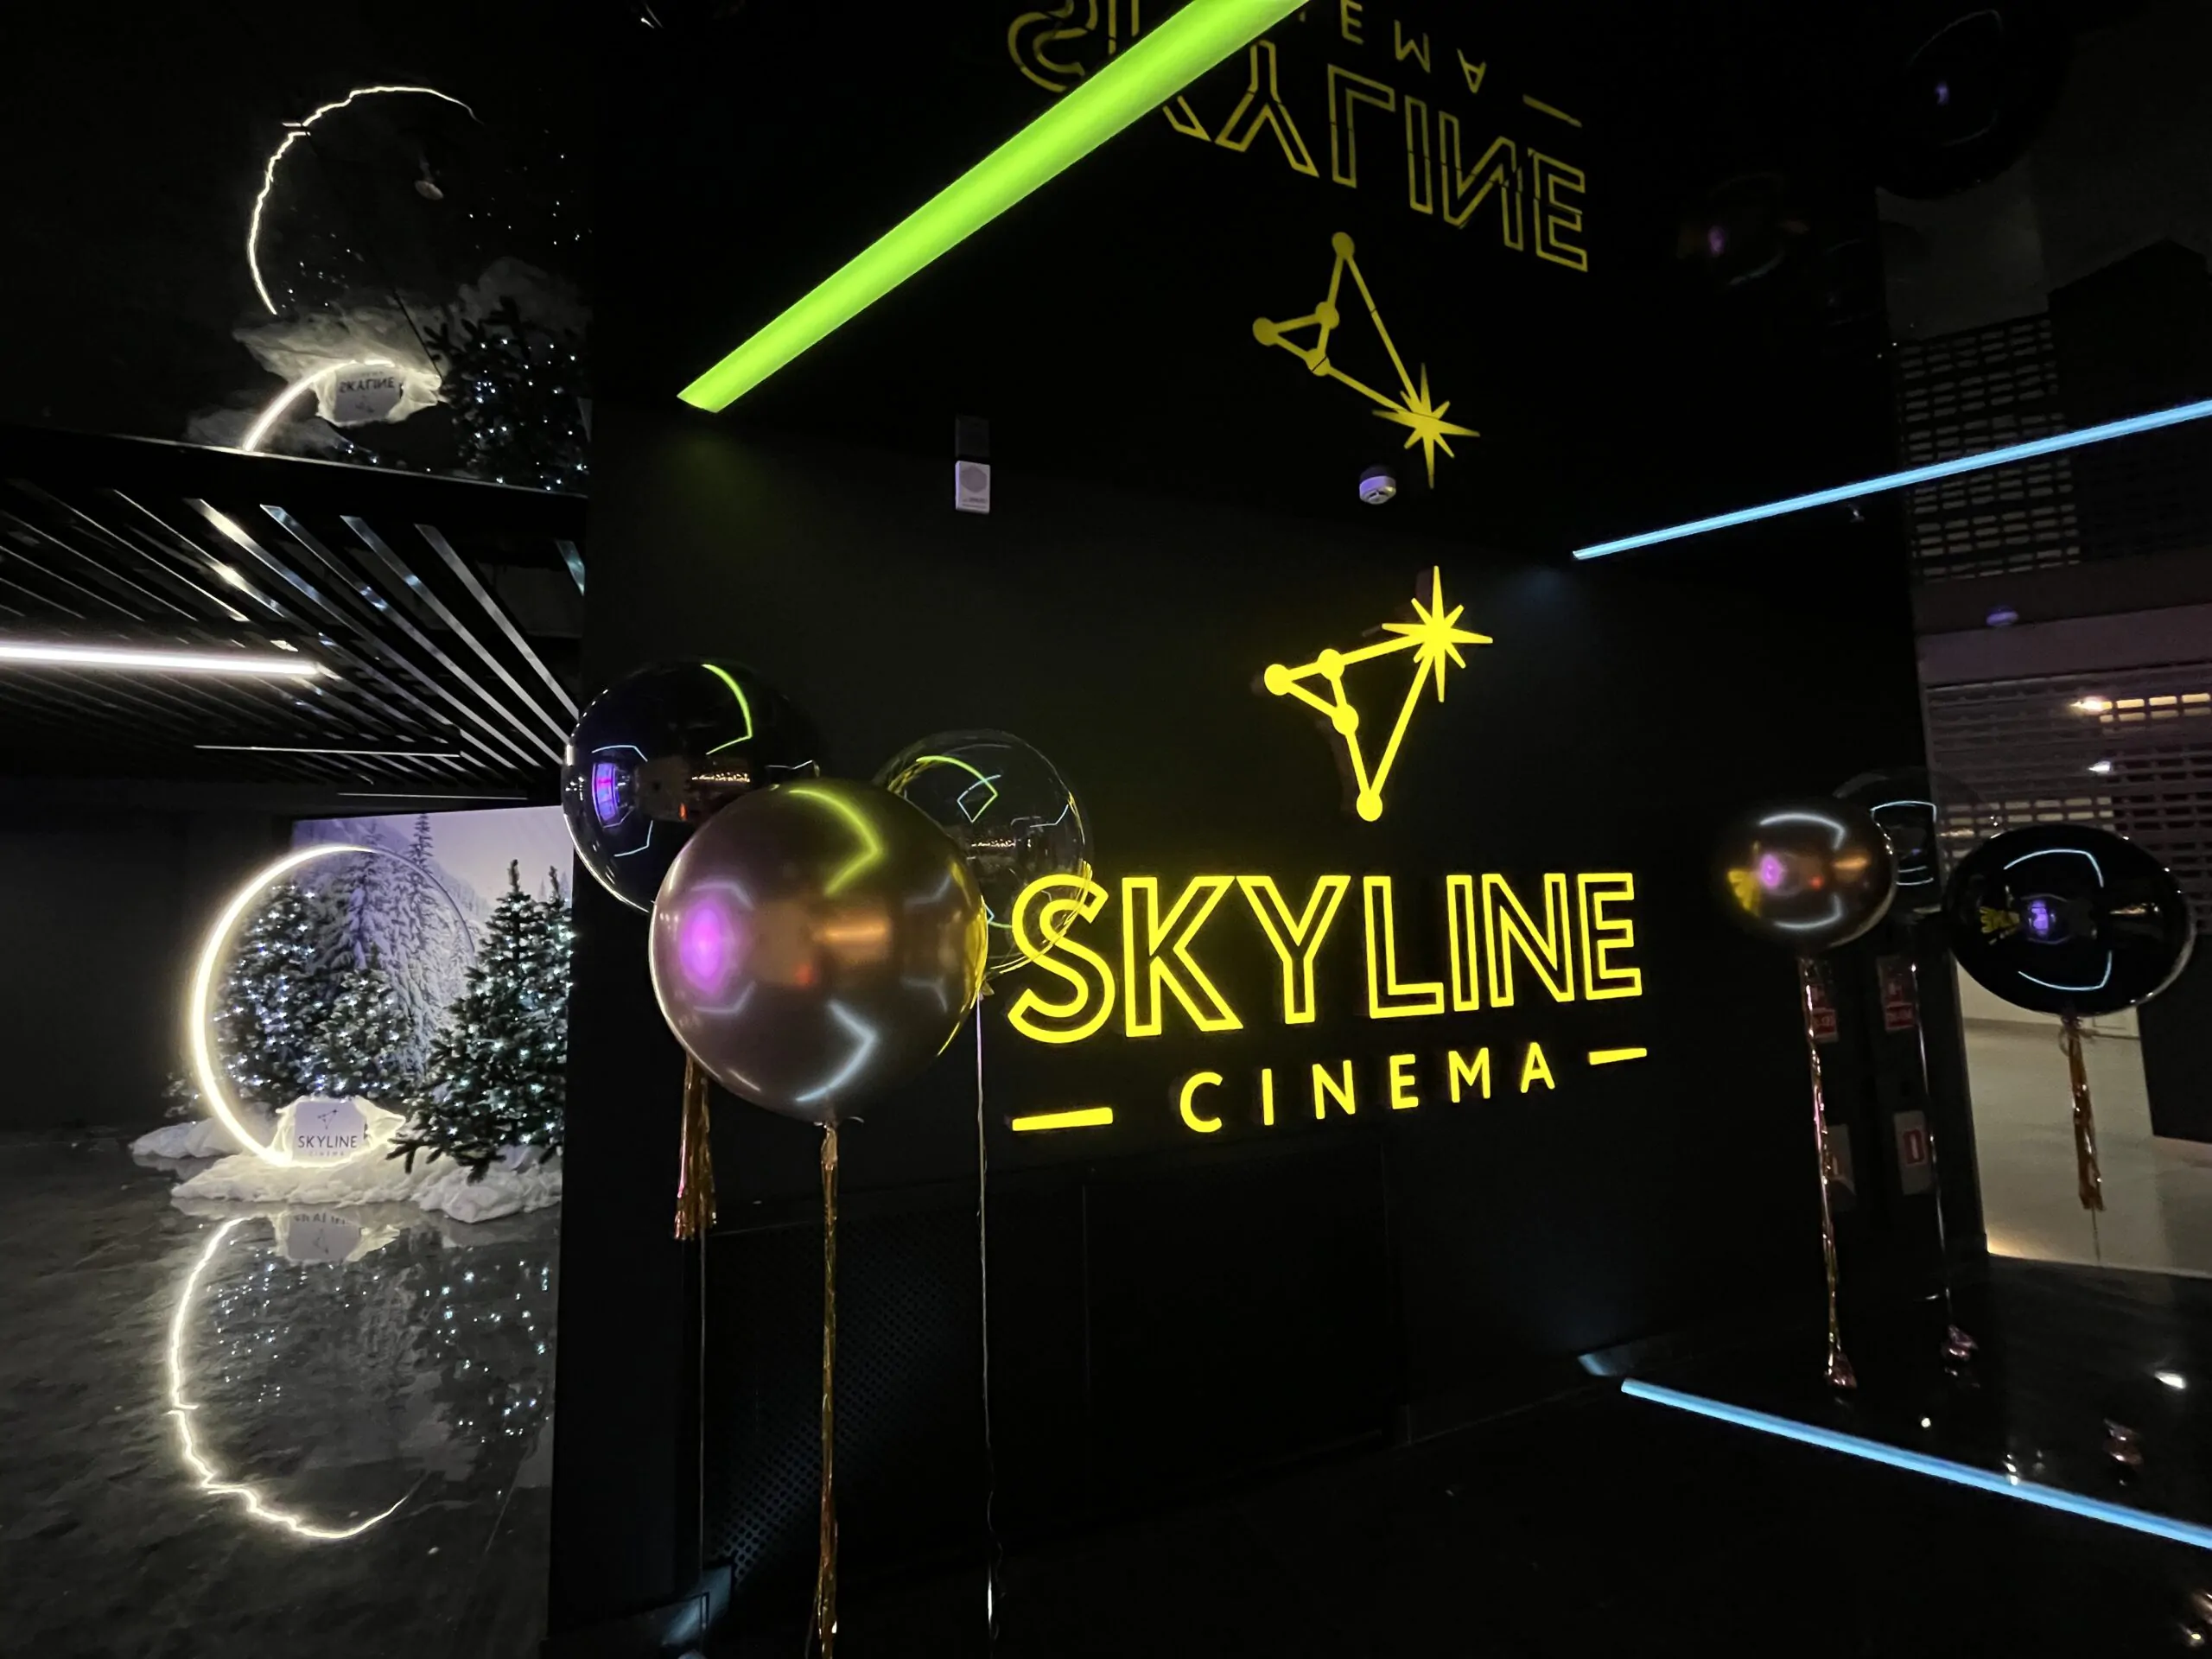 В Galileo открылся кинотеатр SKYLINE Cinema. Мы уже сходили